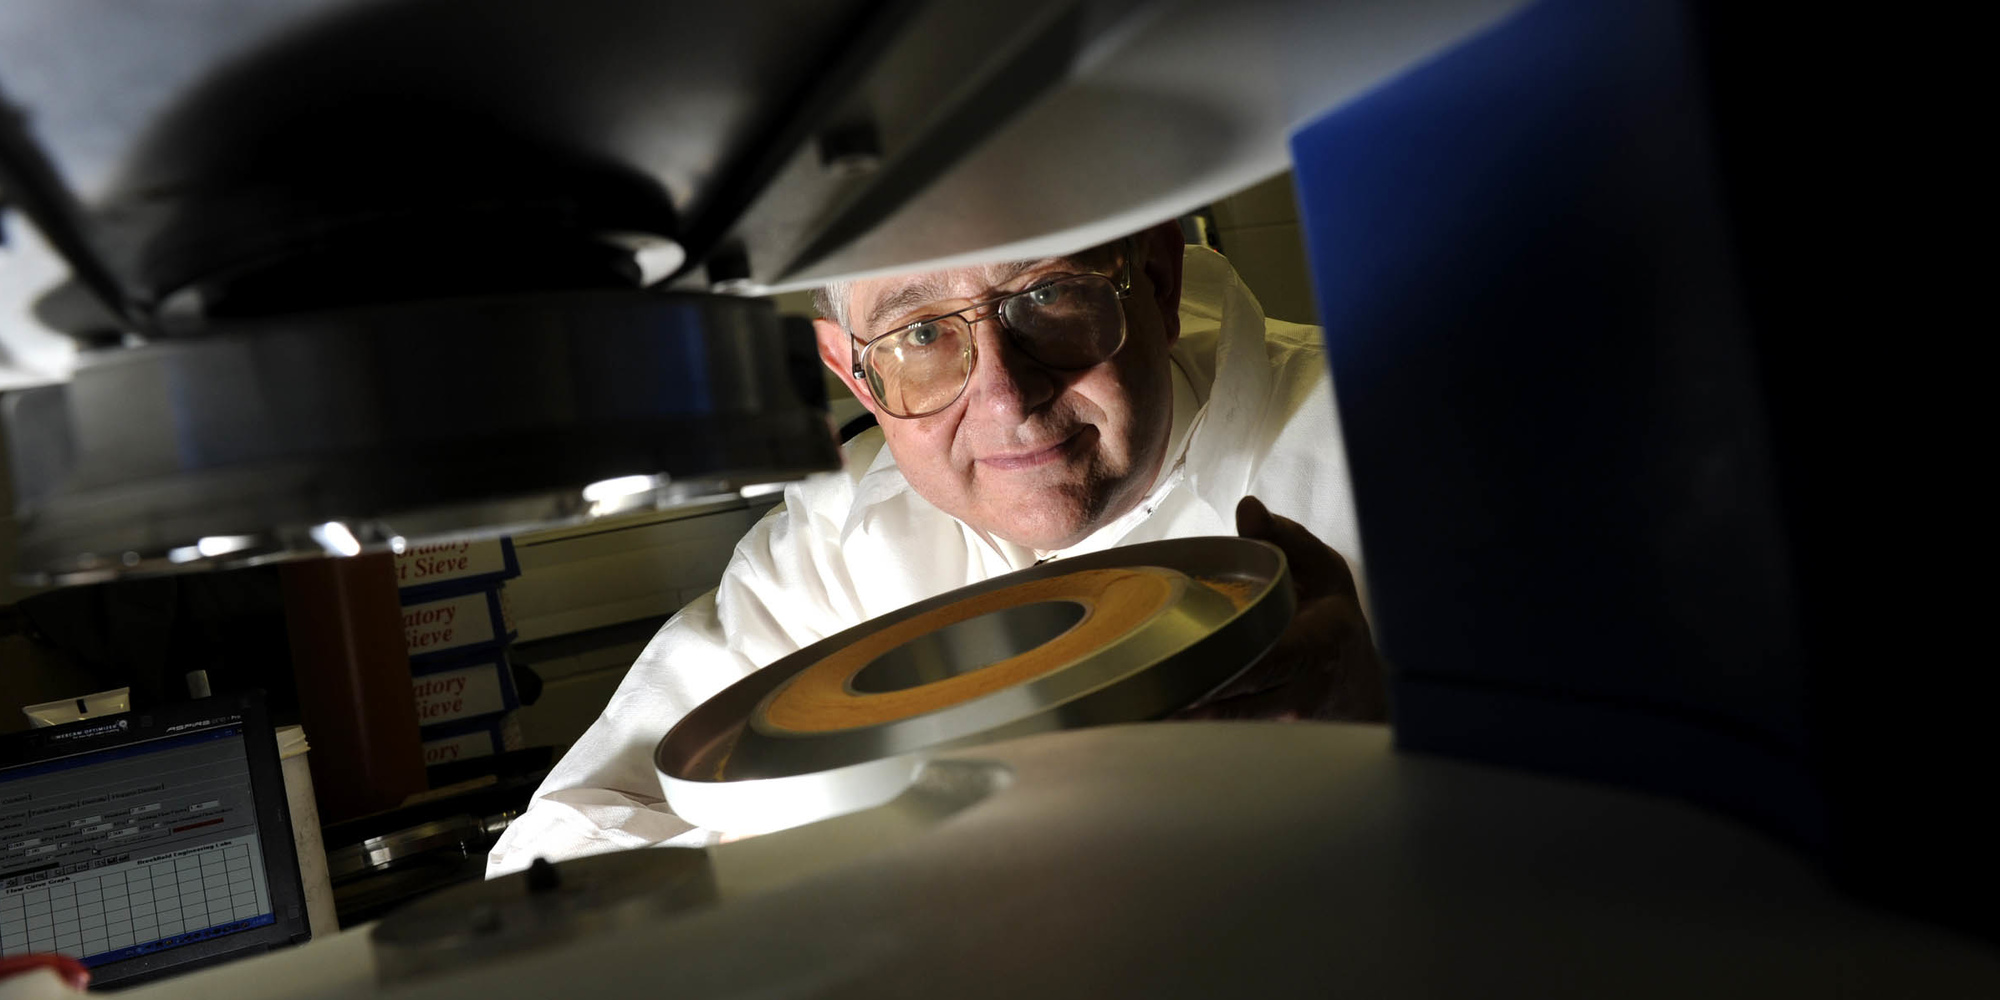 沃尔夫森散装固体处理技术中心主任迈克尔·布拉德利（Michael Bradley）教授。通过格林威治大学沃尔夫森中心的照片。